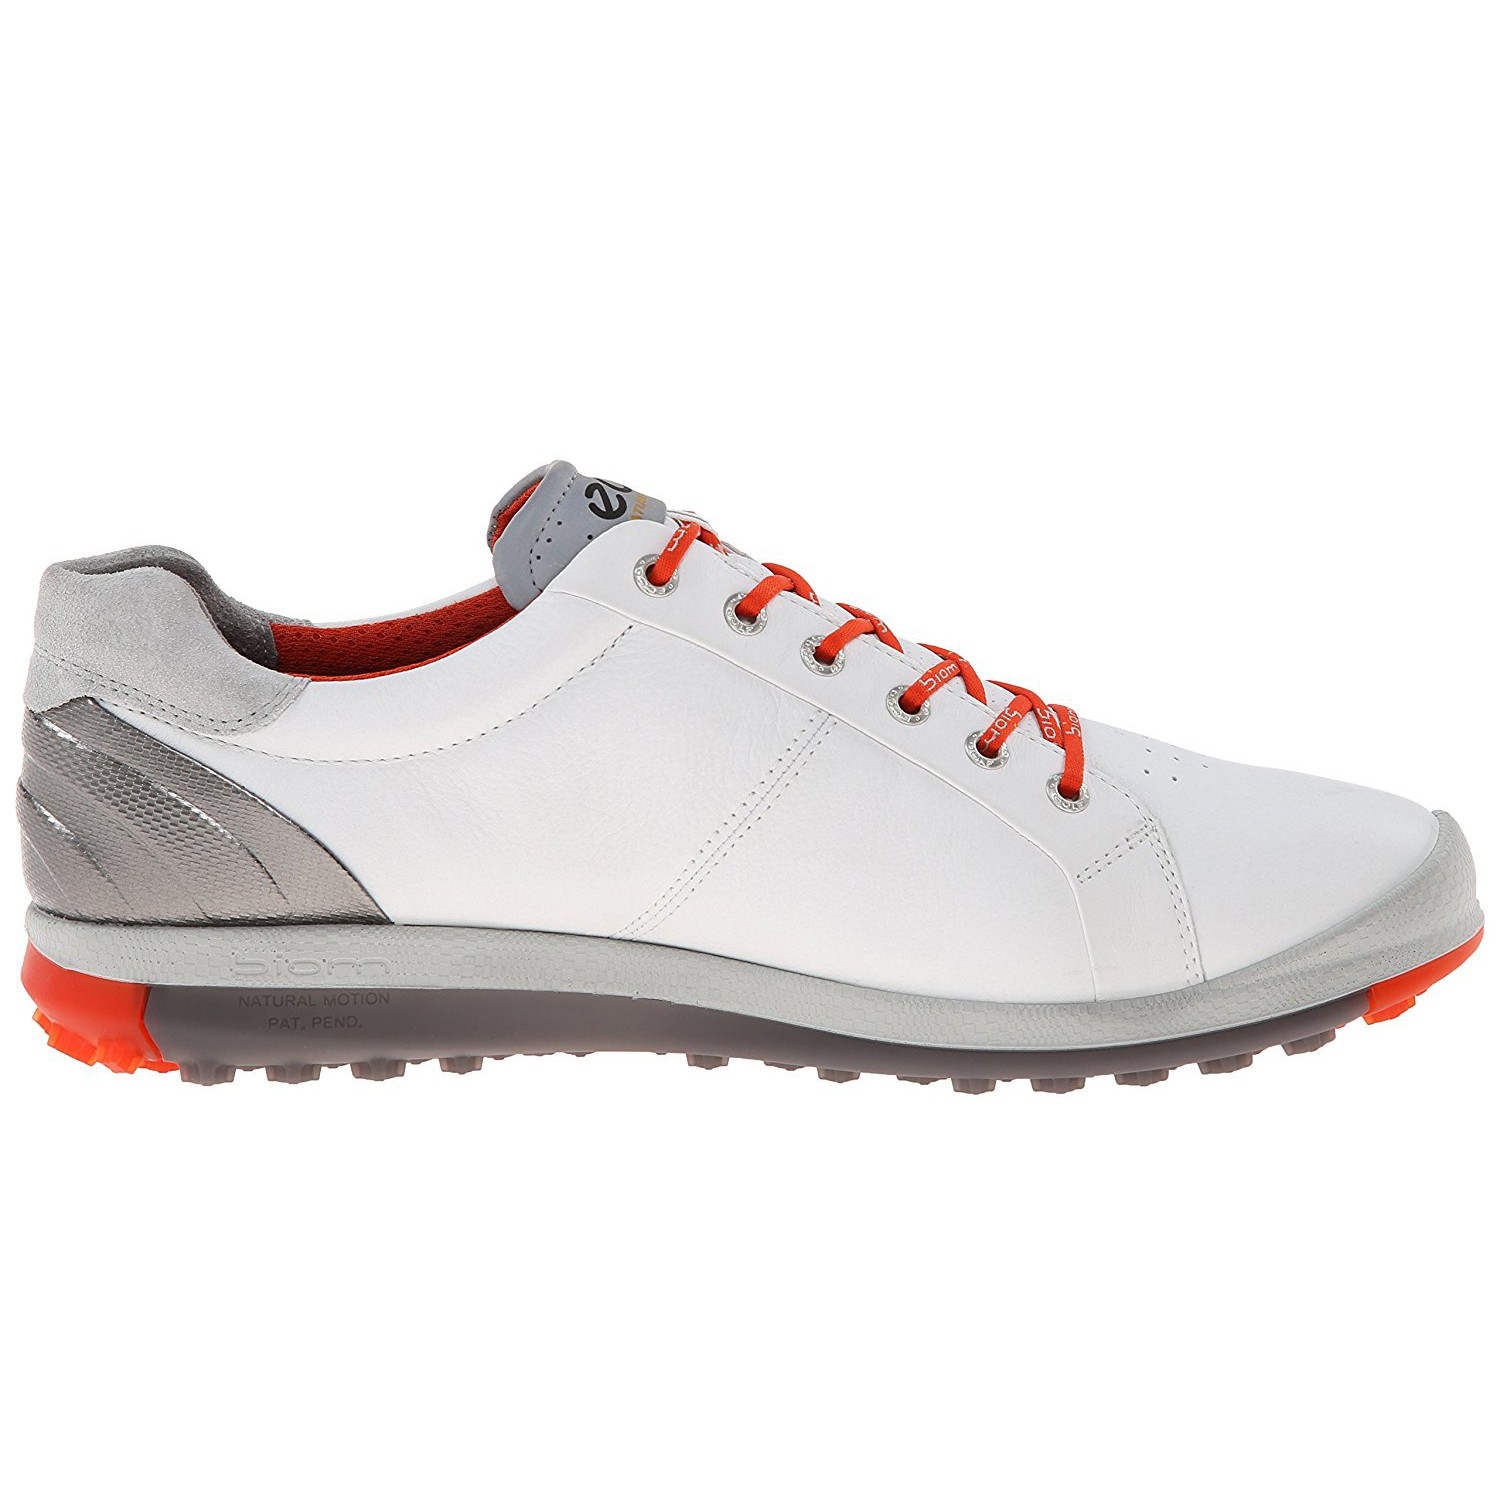 Các mẫu giày golf Ecco rất được khách hàng ưa thích